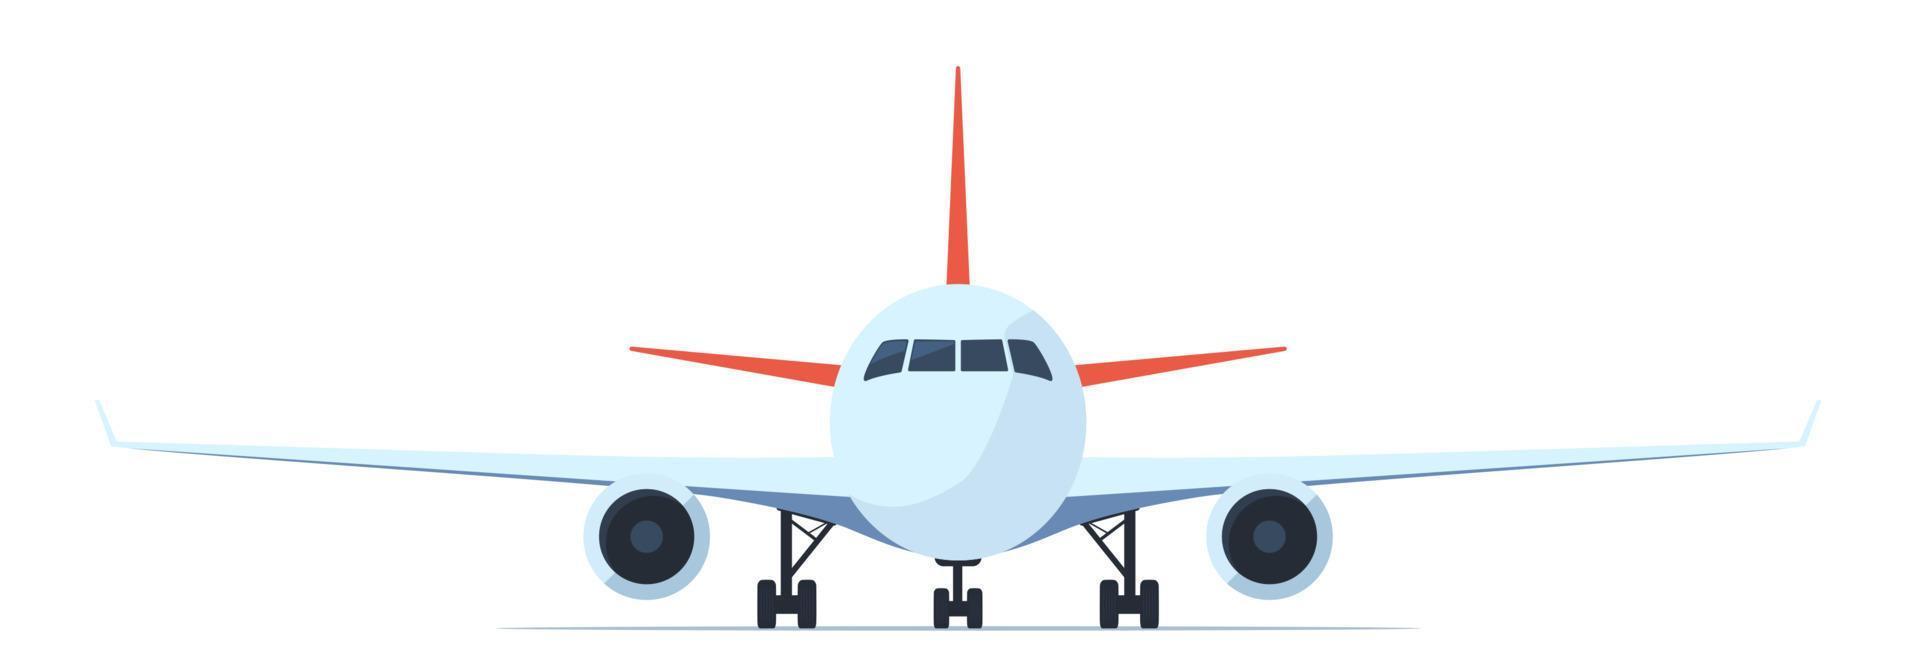 avião de passageiros, vista frontal. ilustração em vetor plana de avião com vigias, asas e motores.